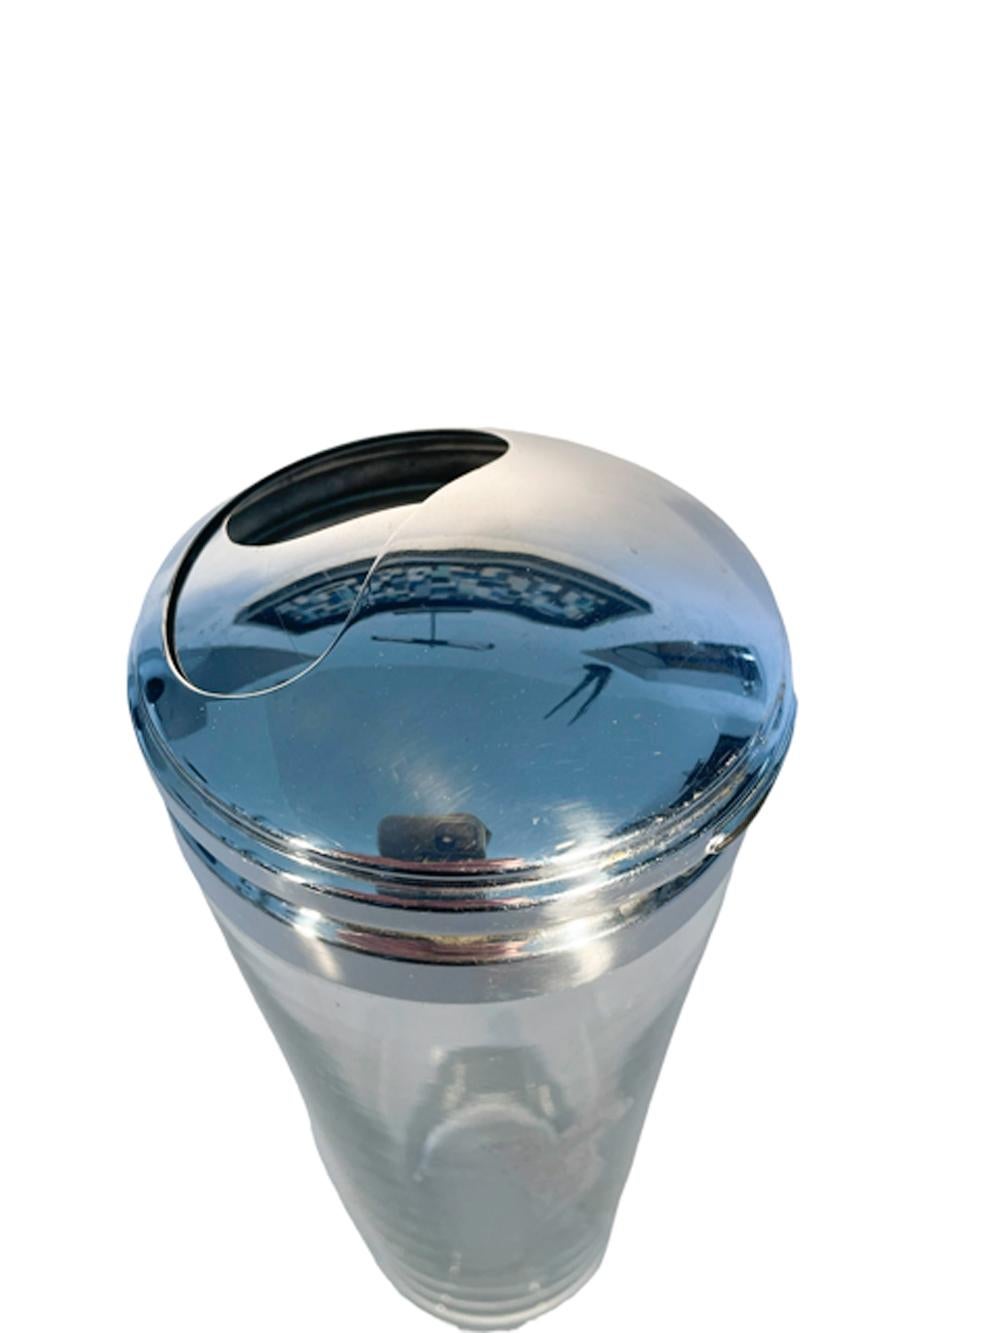 Shakers en verre transparent avec un golfeur recouvert d'argent, monté sur un pied poli et muni d'un couvercle en deux parties 